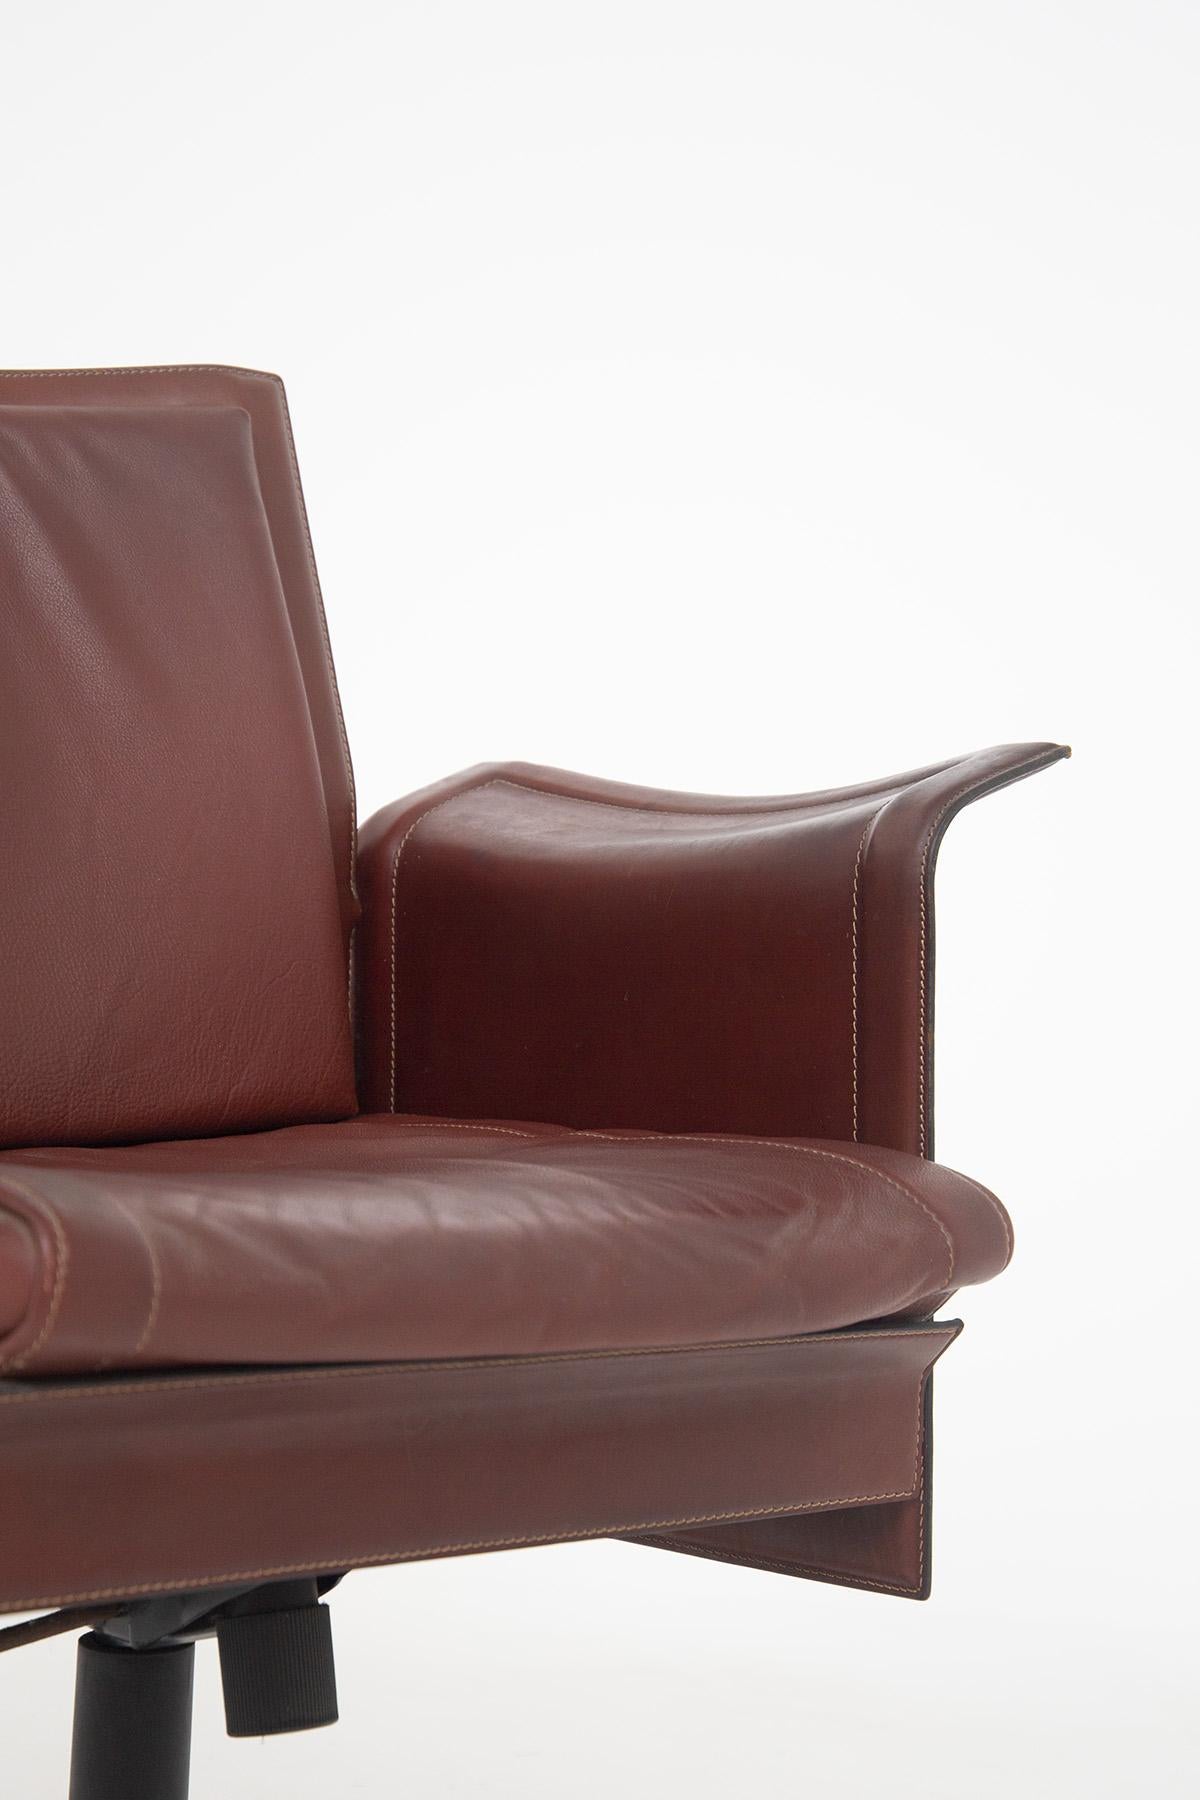 Tito Agnoli for Matteograssi Desk Armchair Korium in Leather, Label 3